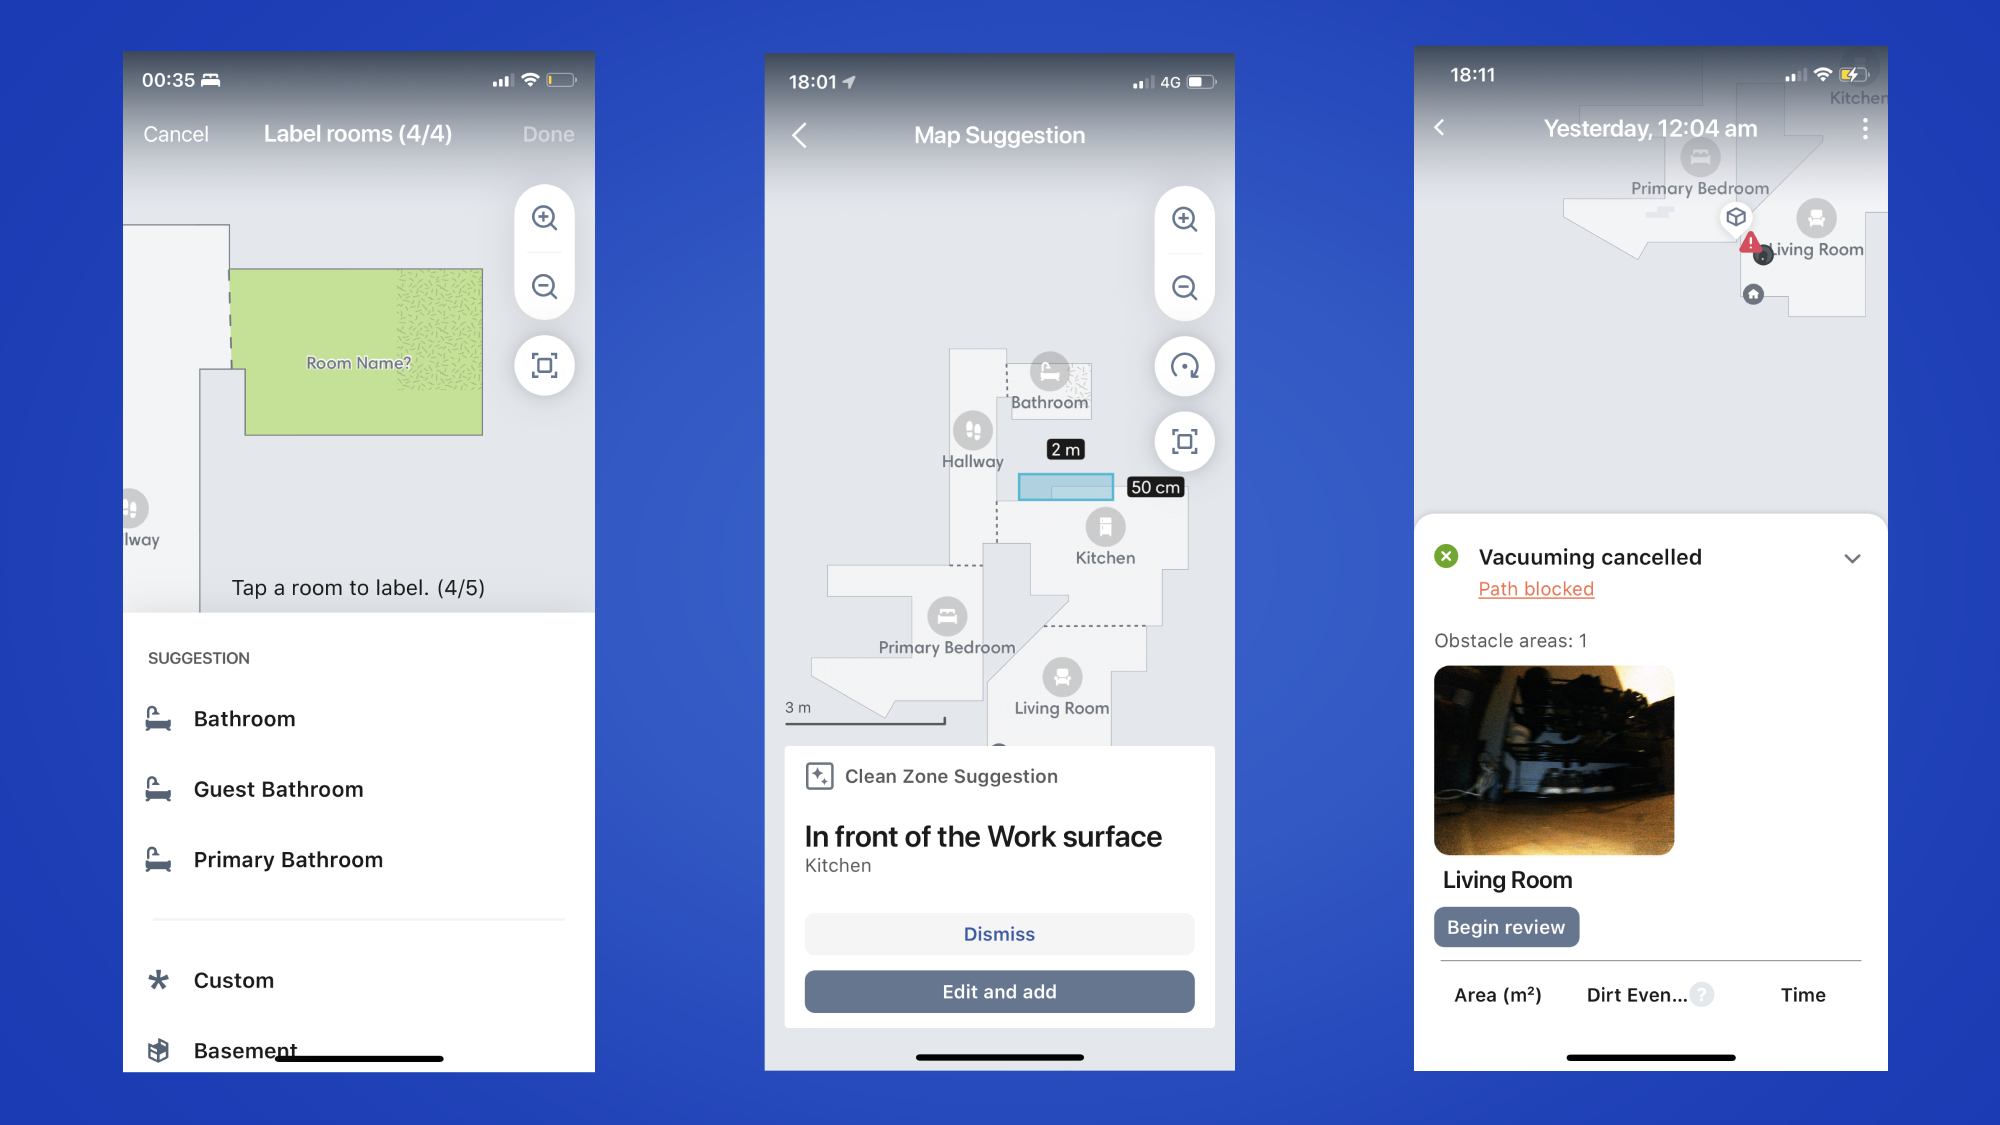 Tre schermate dell'app iRobot che mostrano l'impostazione della mappa, i suggerimenti per la pulizia della mappa e un caso di ostacolo che blocca la pulizia.